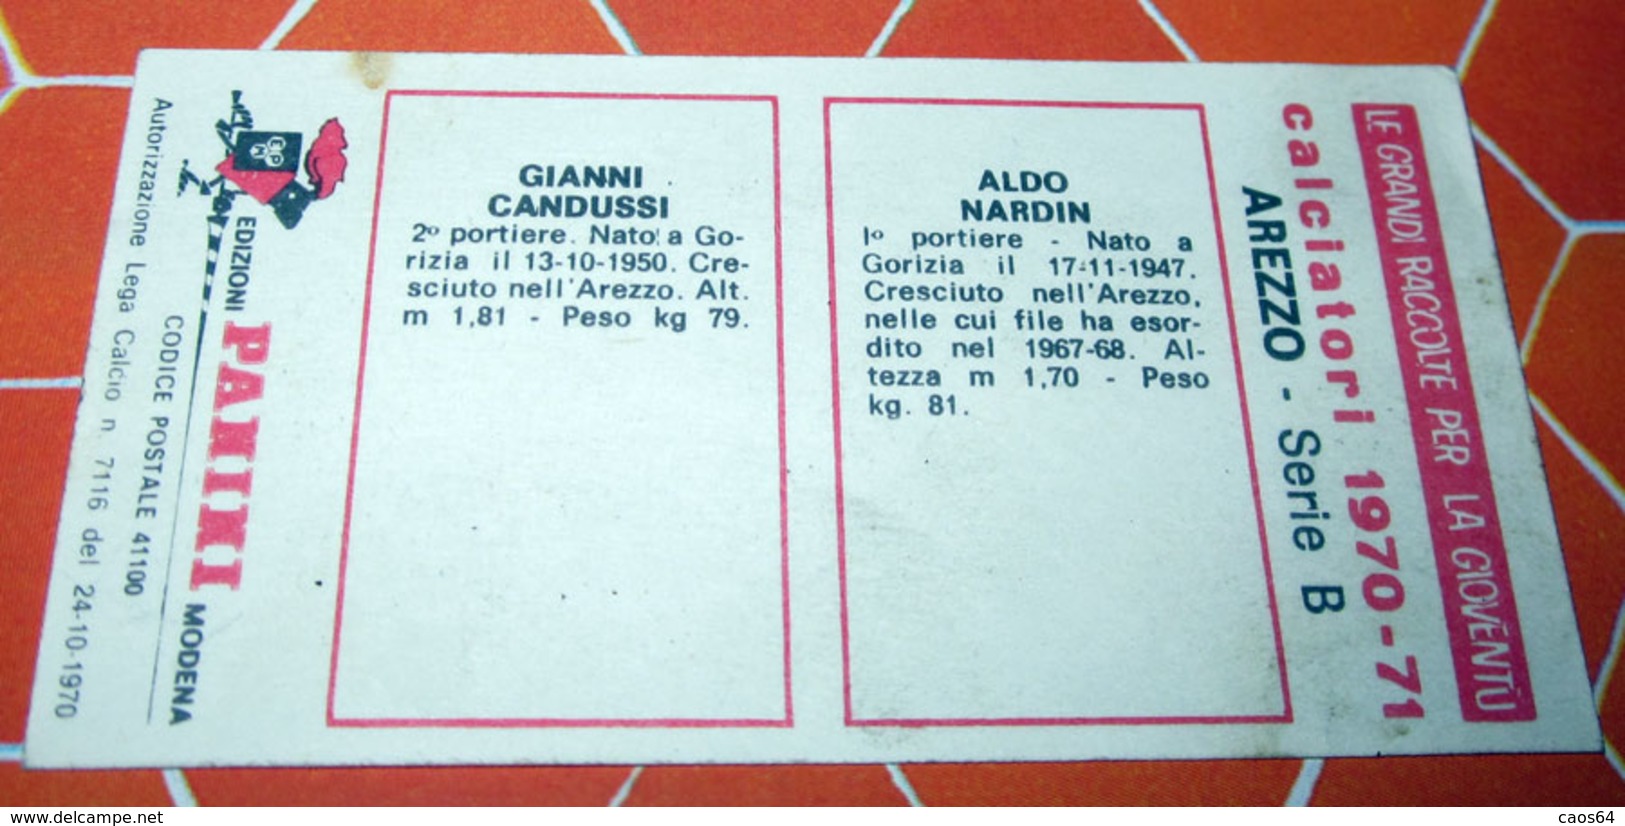 CALCIATORI PANINI 1970-71 AREZZO NARDINI CANDUSSI - Edizione Italiana